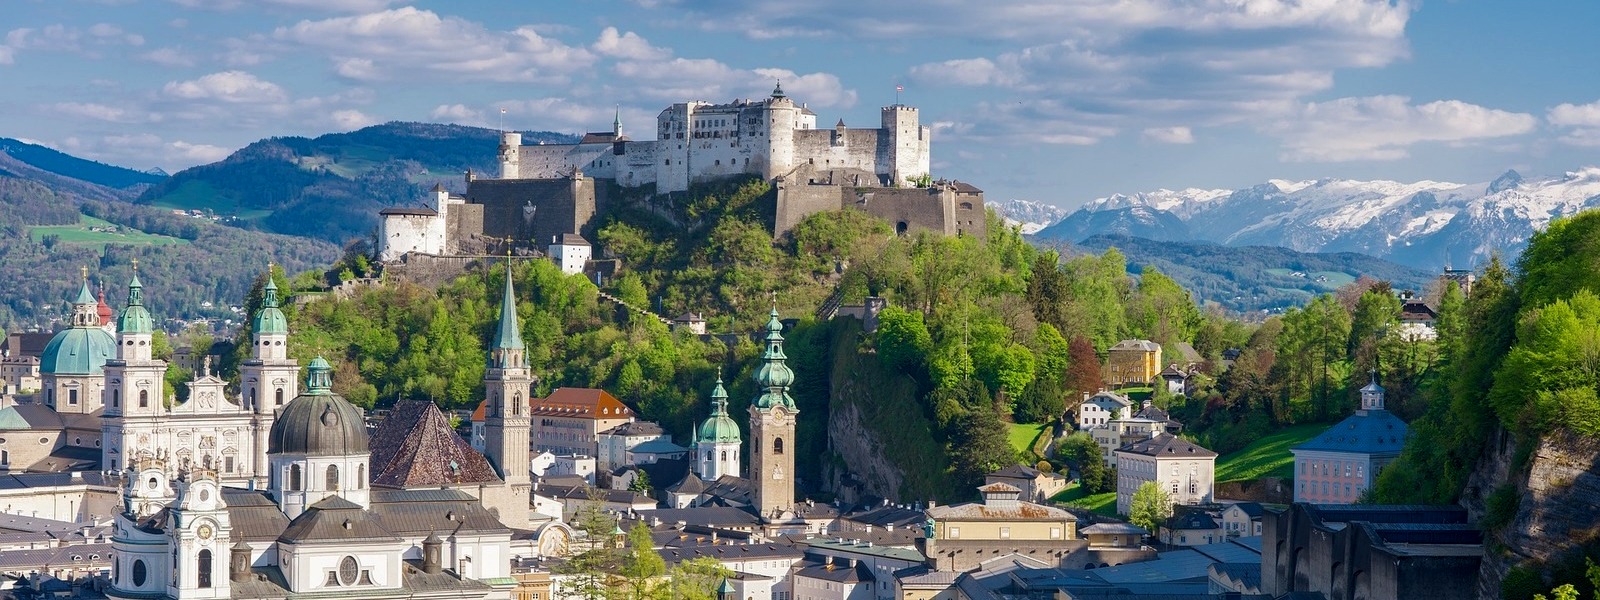 Salzburg Festung Hohensalzburg kastély